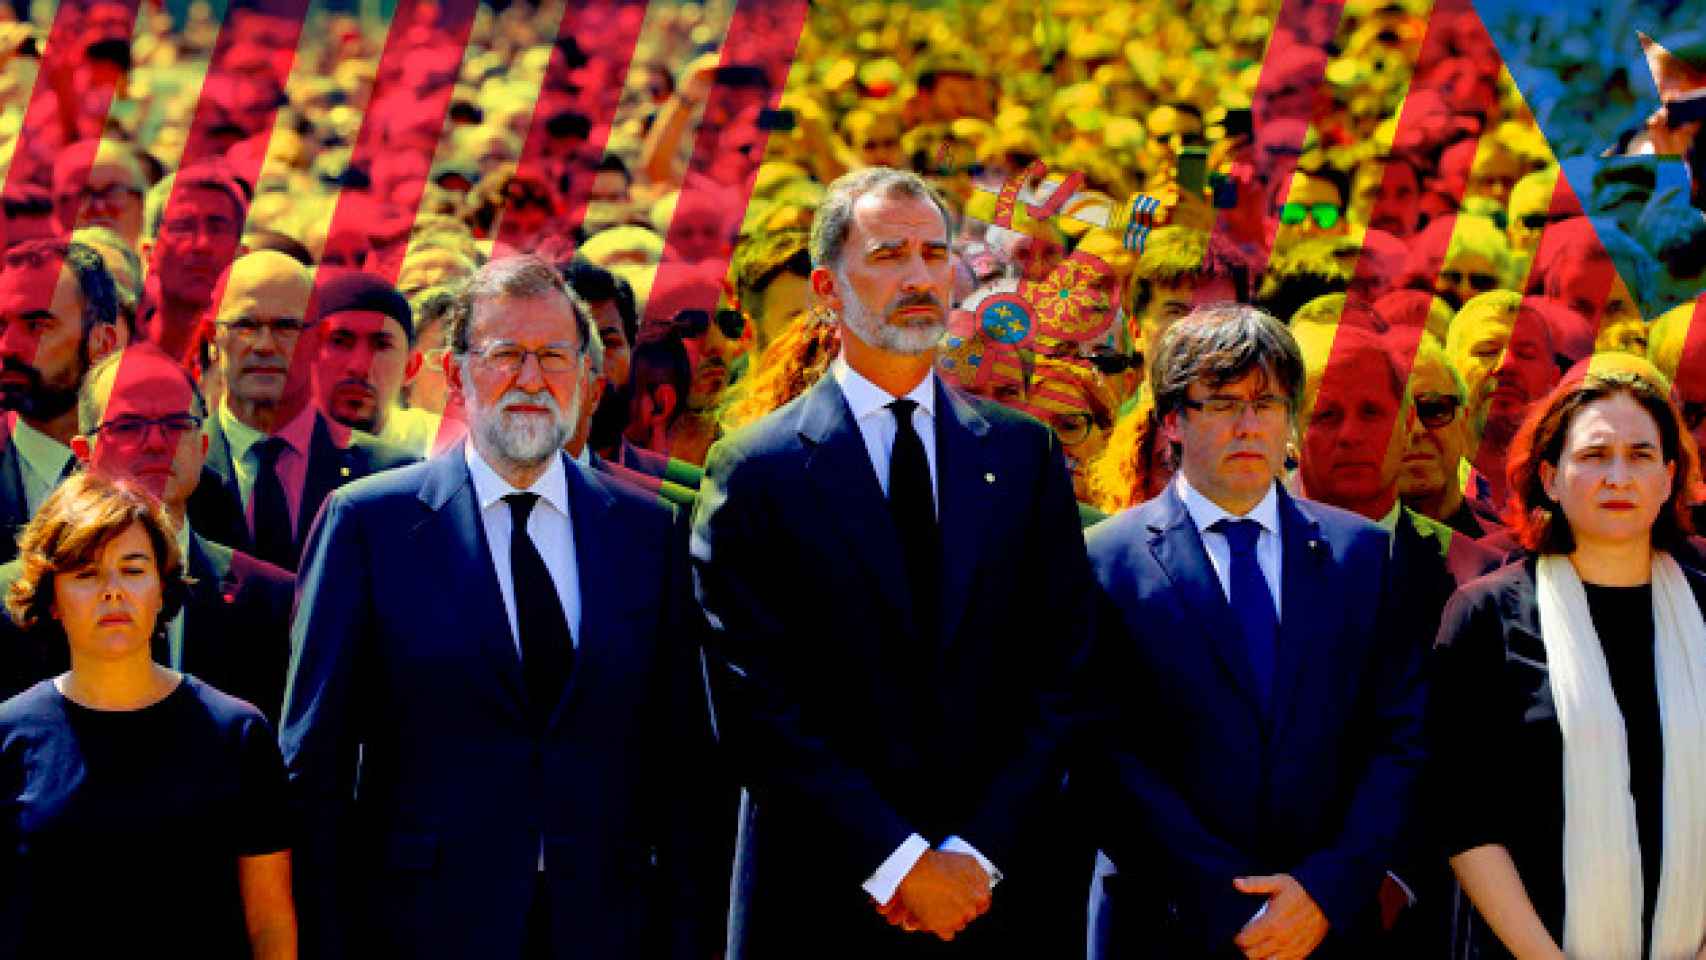 El rey Felipe VI, acompañado de Soraya Sáenz de Santamaría, Mariano Rajoy, Carles Puigdemont y Ada Colau, guarda un minuto de silencio en la plaza de Cataluña / FOTOMONTAJE DE CG